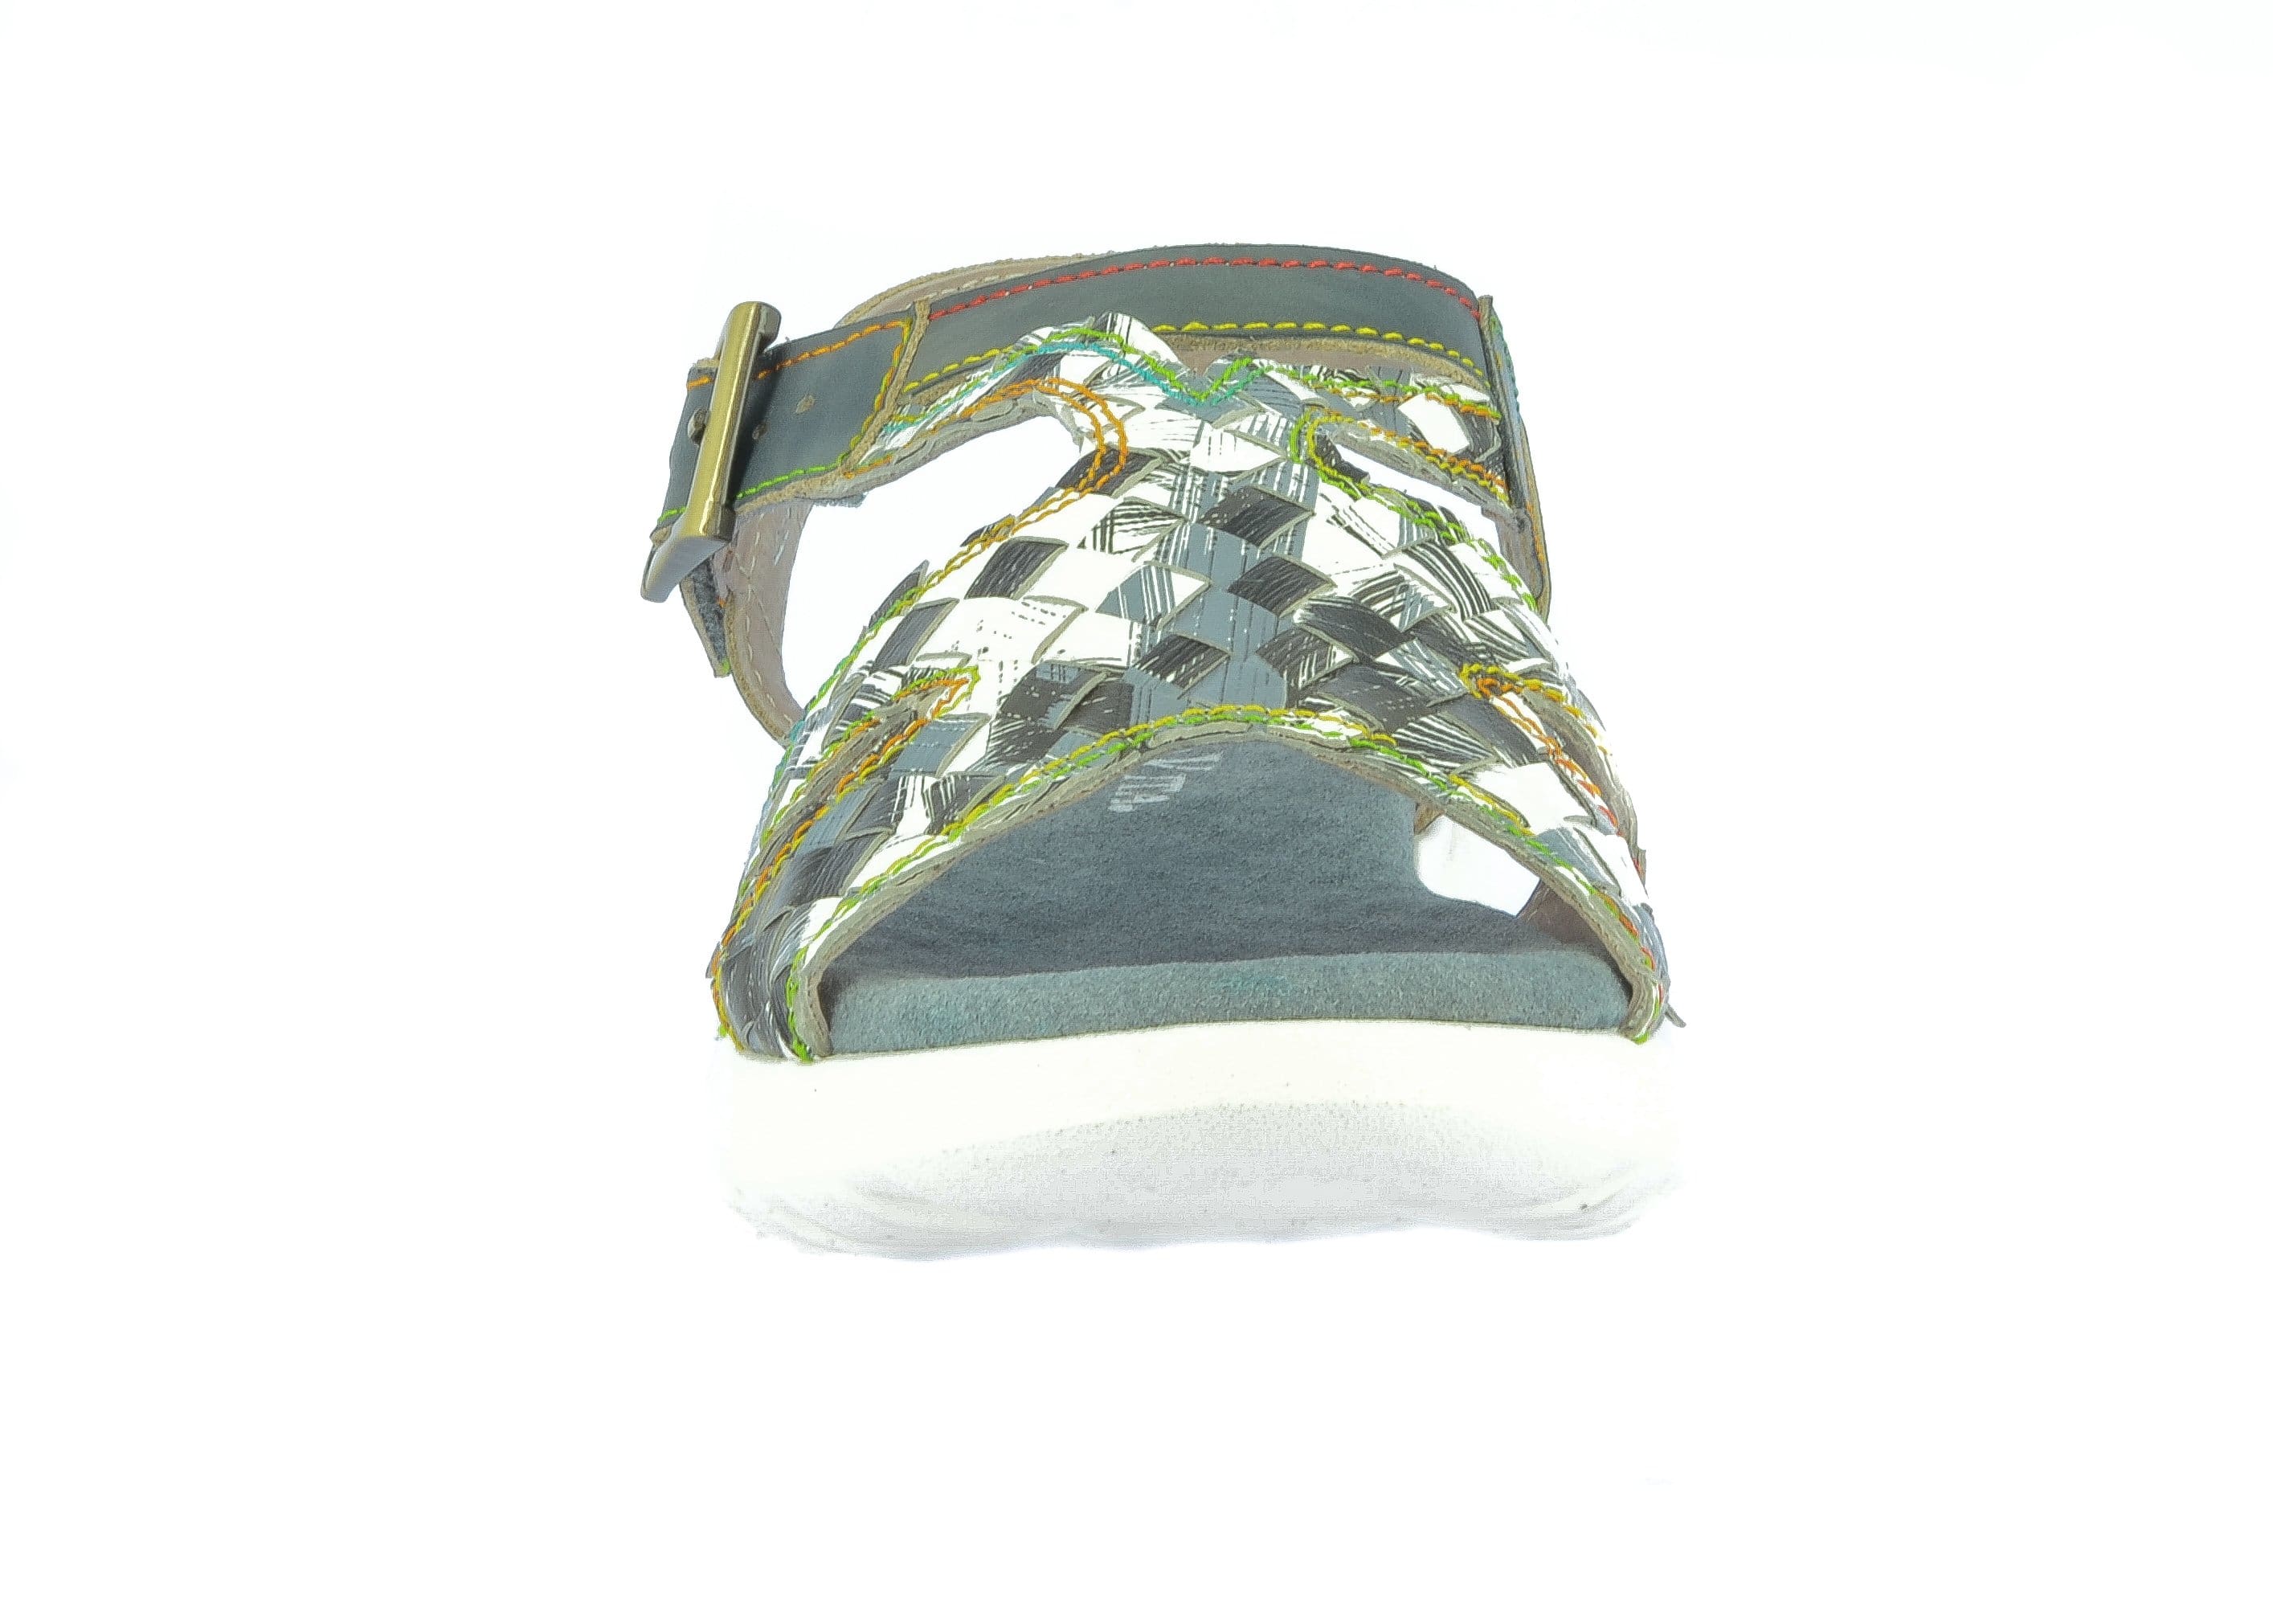 Shoe FACLAISEO01 - Sandal